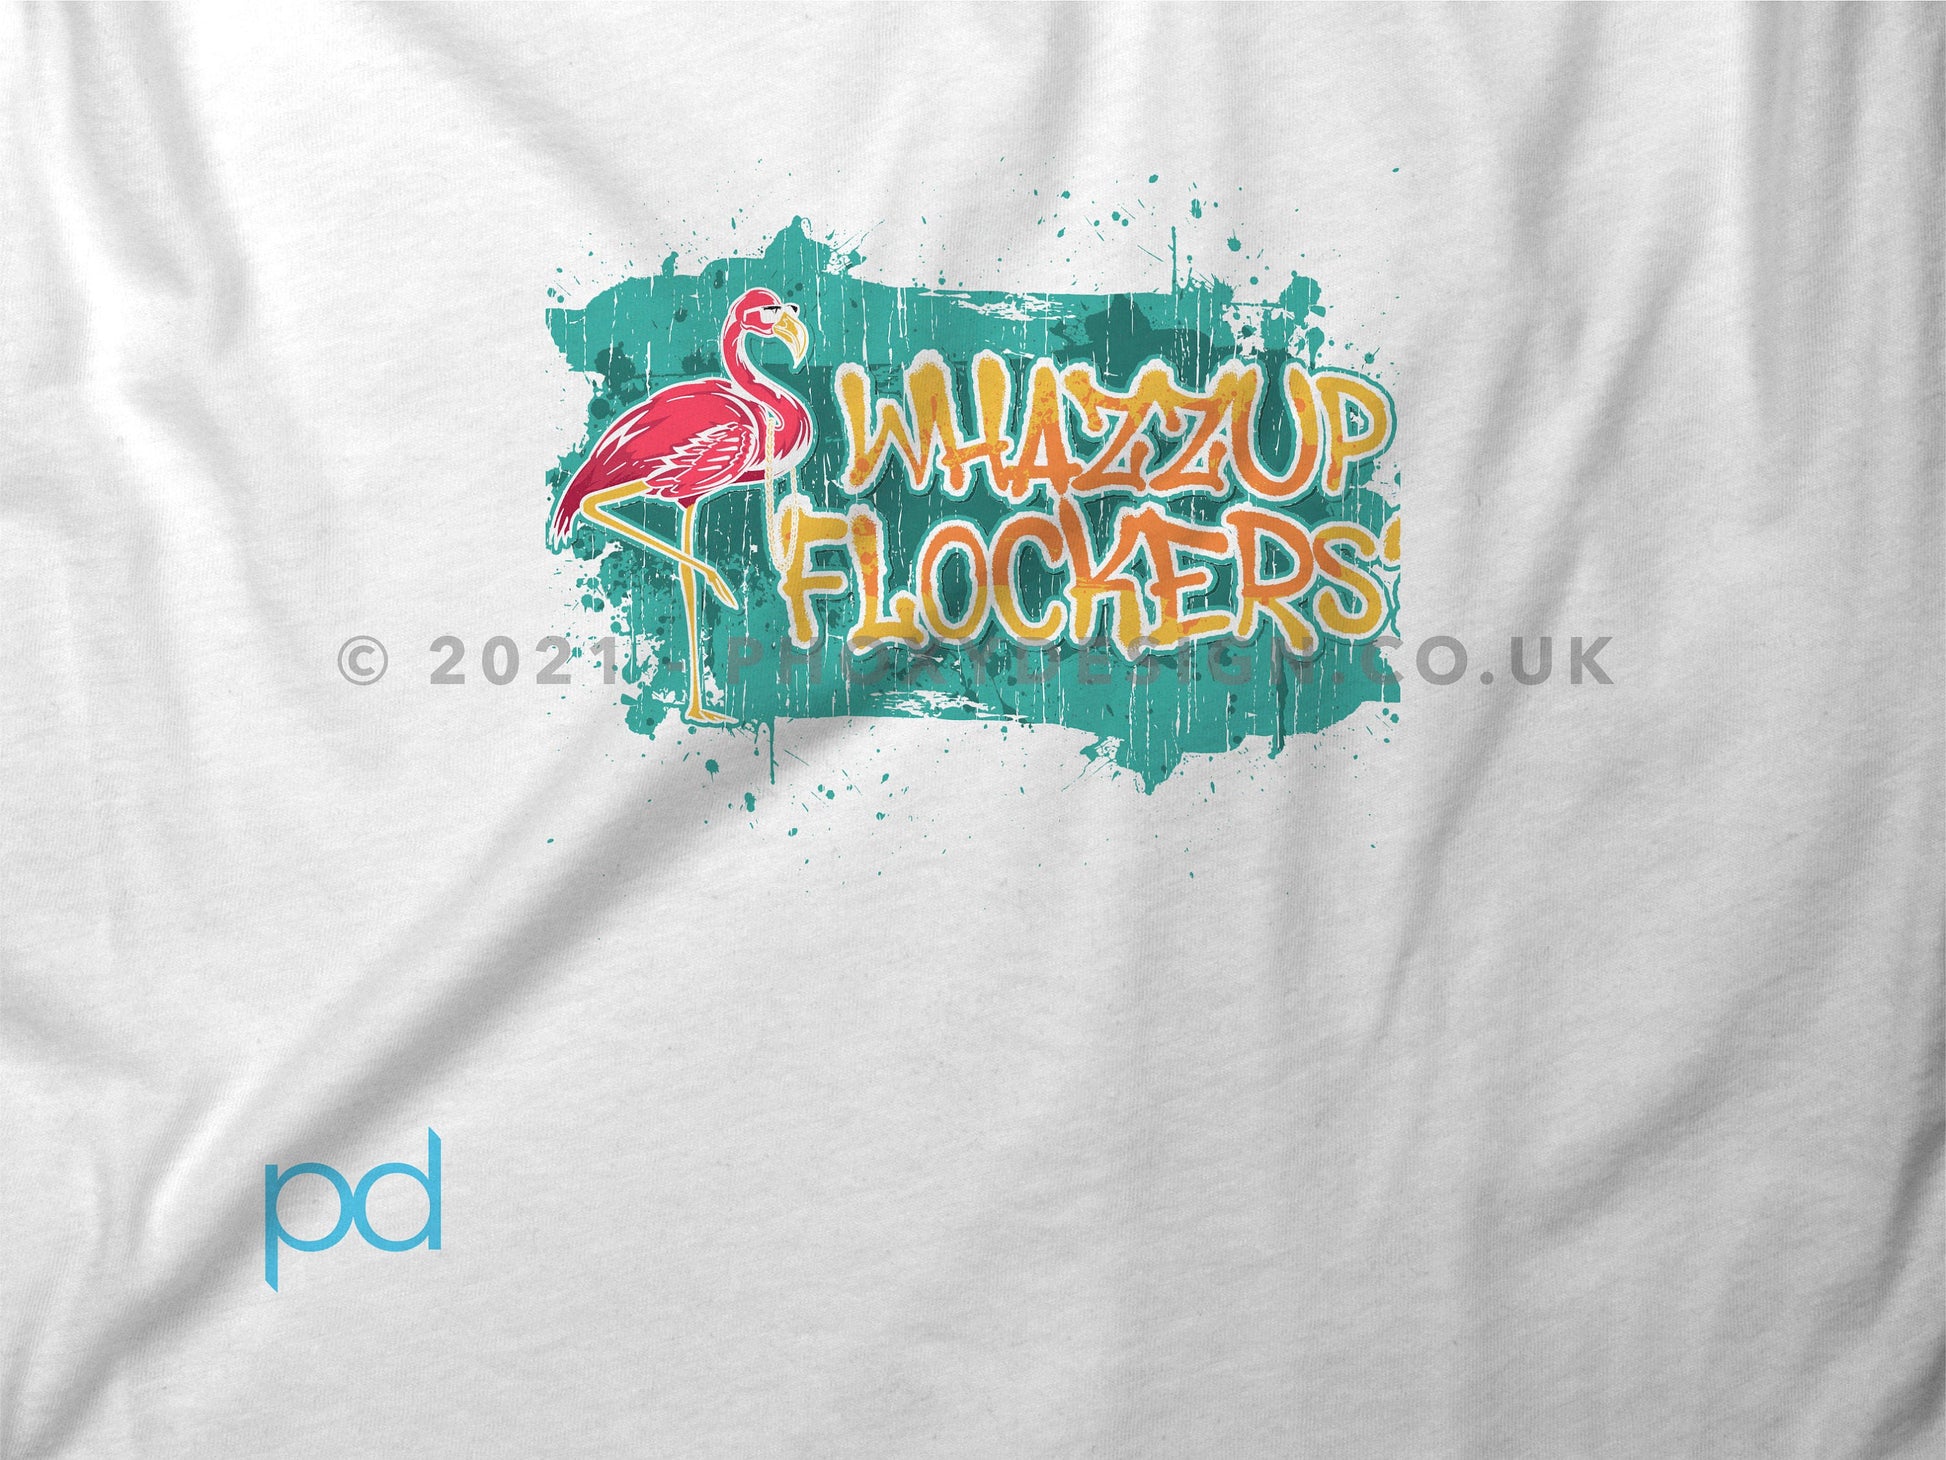 Flamingo Shirt for Flamingo Lovers T Shirt, Whazzup Flockers Pun T-Shirt Design Gift Idea Tee Shirt T Top